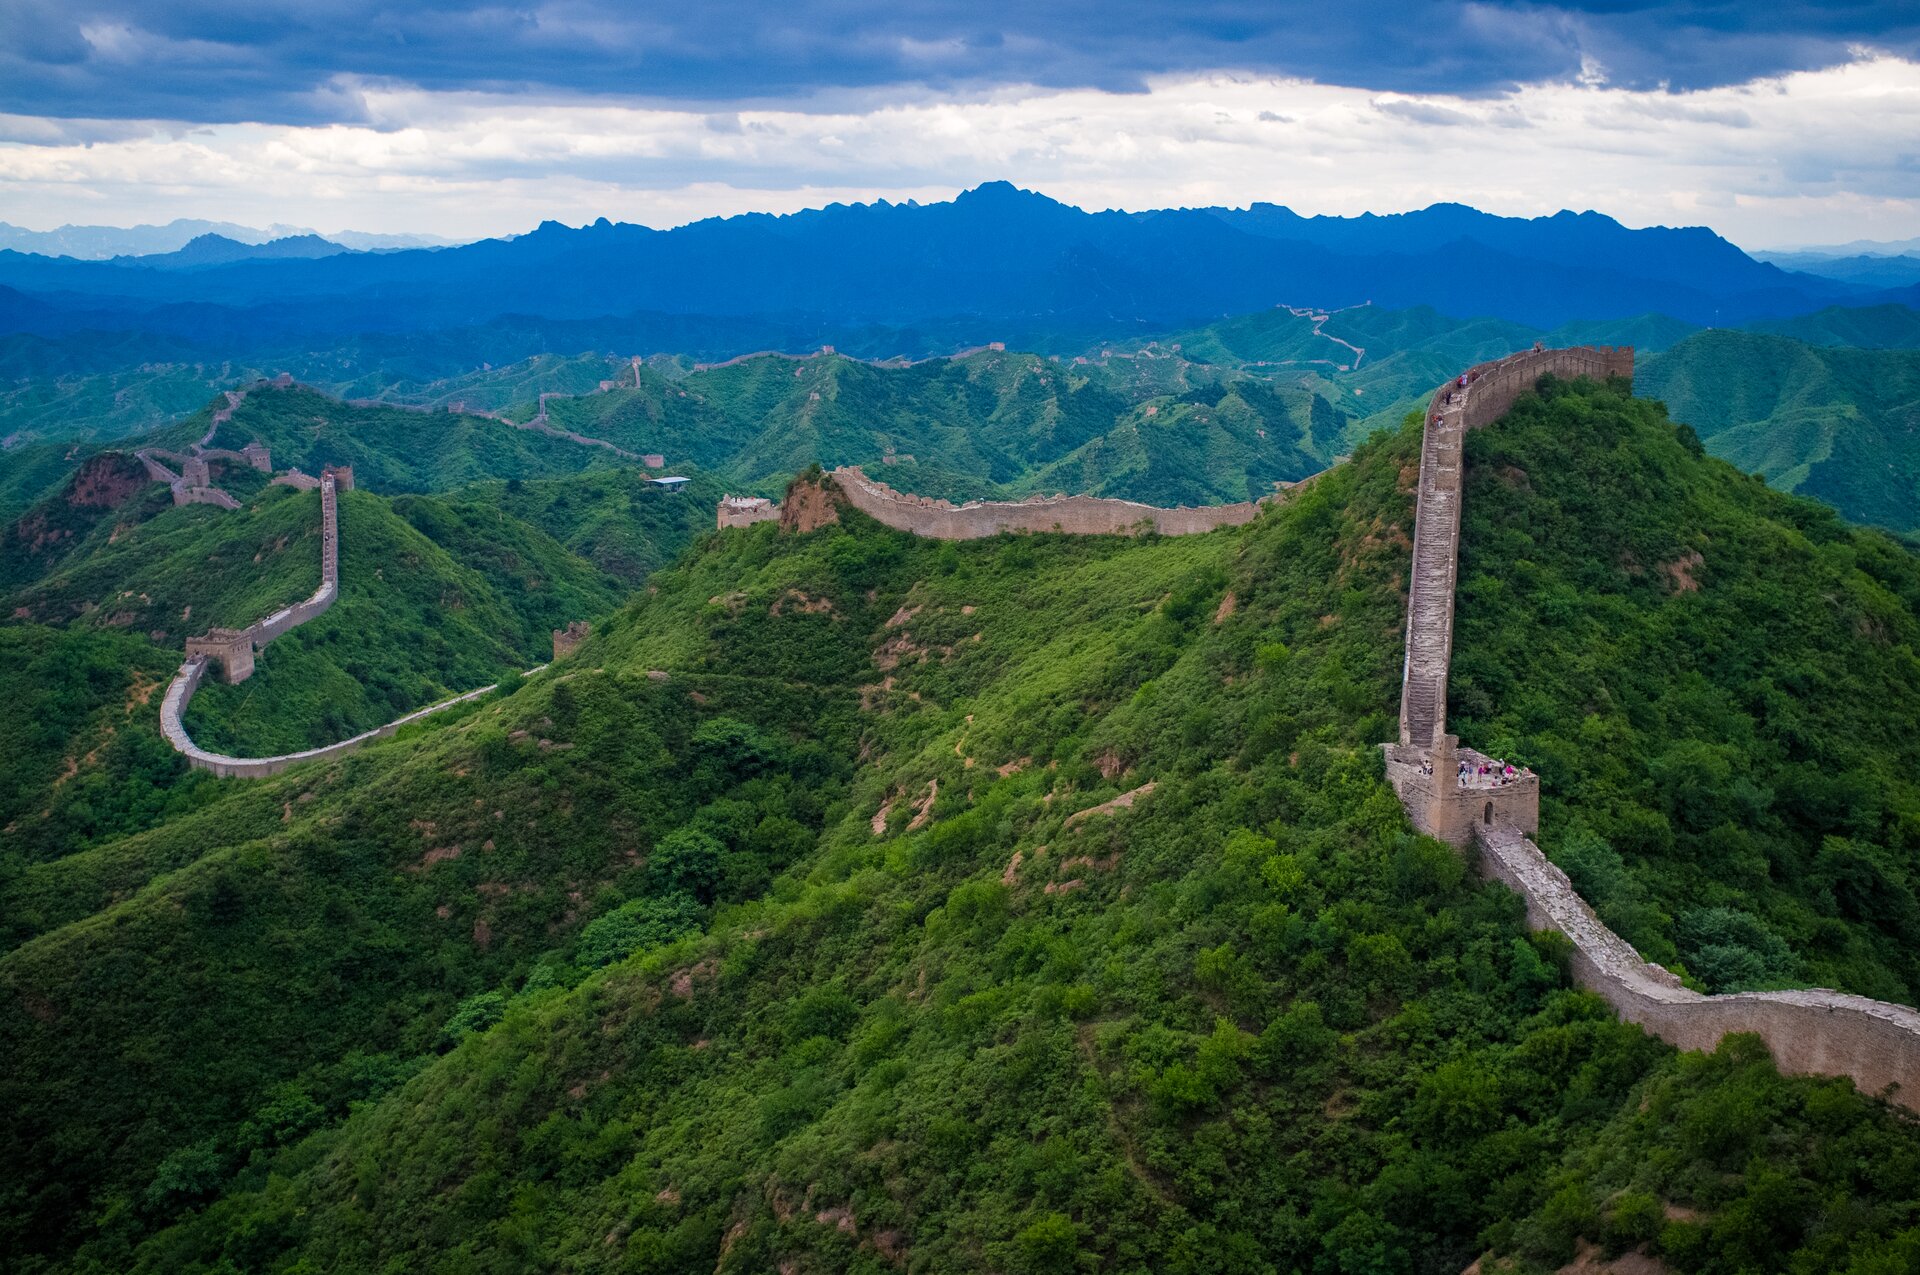 Na zdjęciu Wielki Mur Chiński, przebiegający po szczytowych partiach pasma górskiego porośniętego lasami, wieże sygnalizacyjne. Na murze turyści.